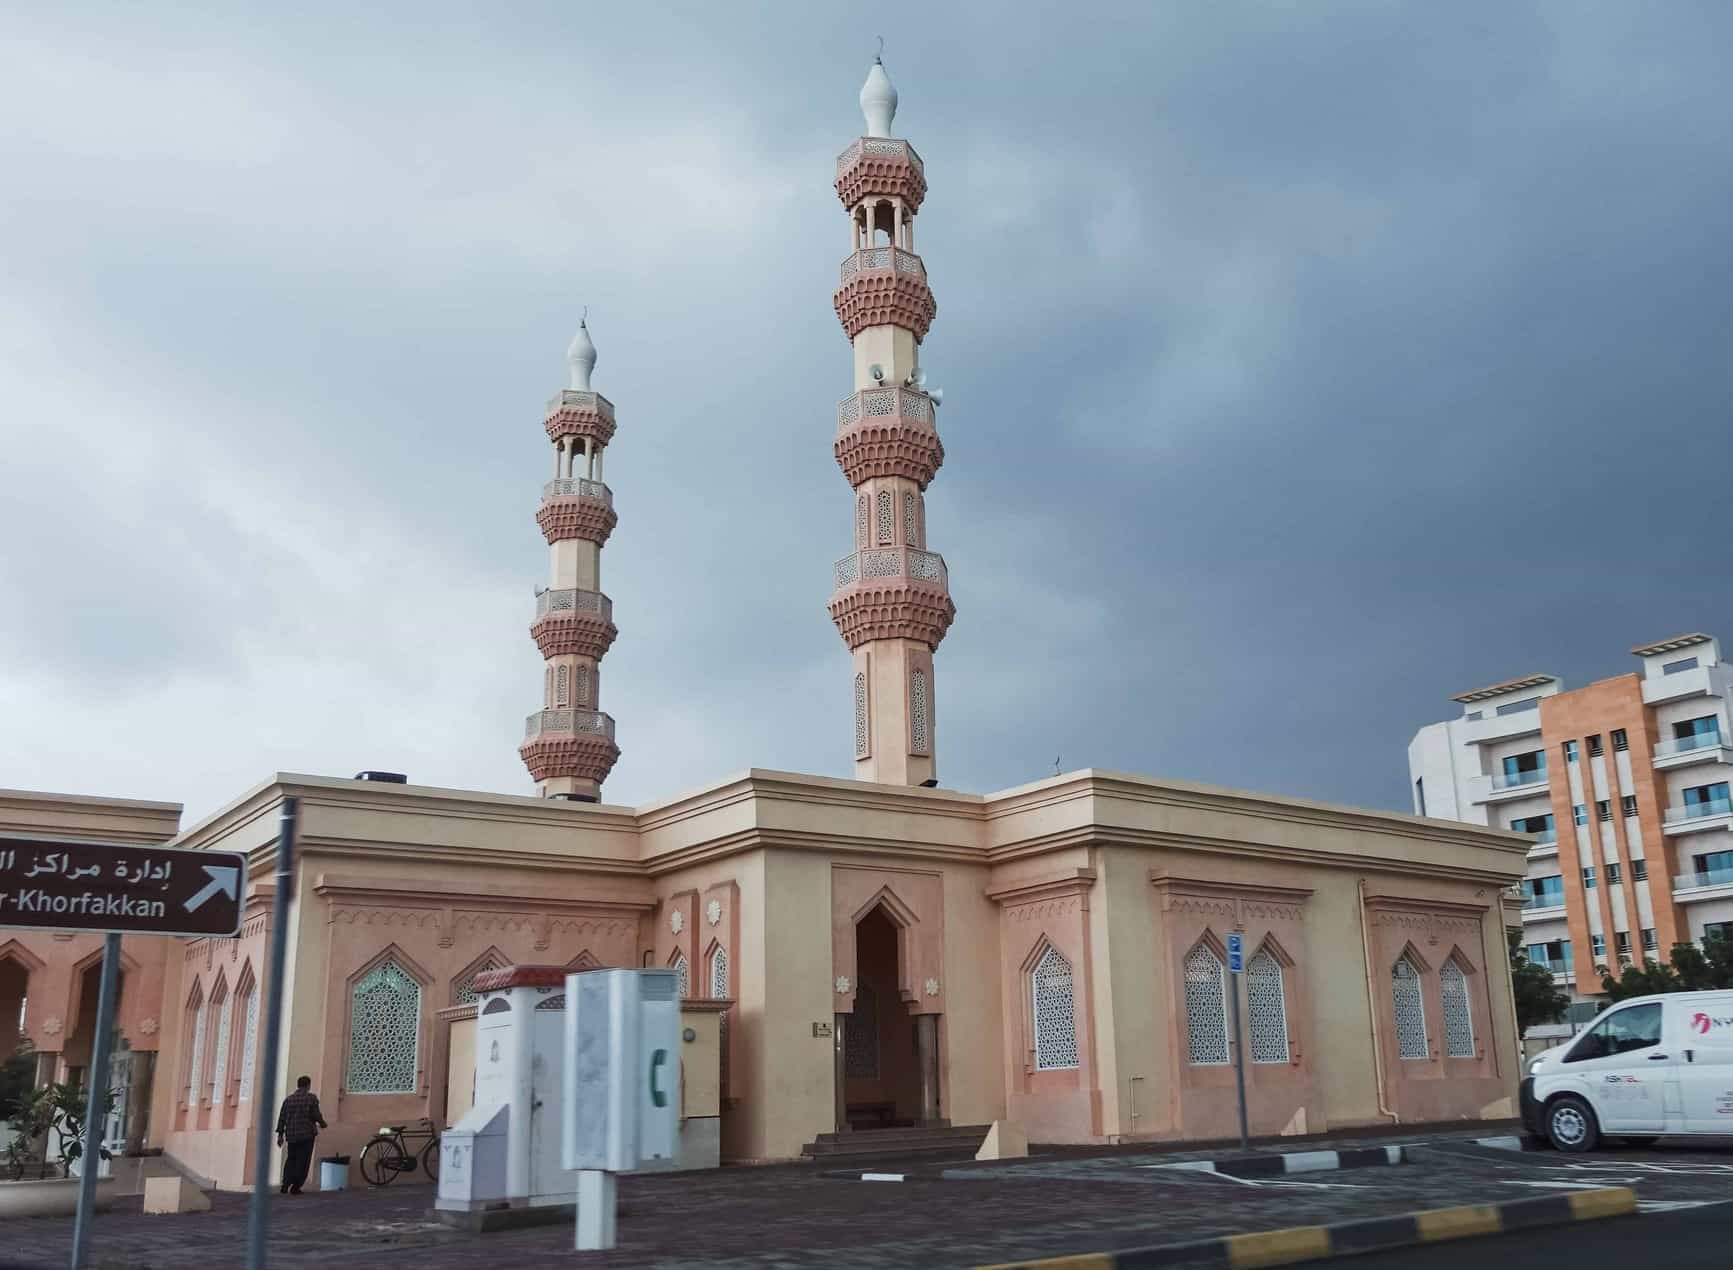 Halal Food & Masjid in Khorfakkan